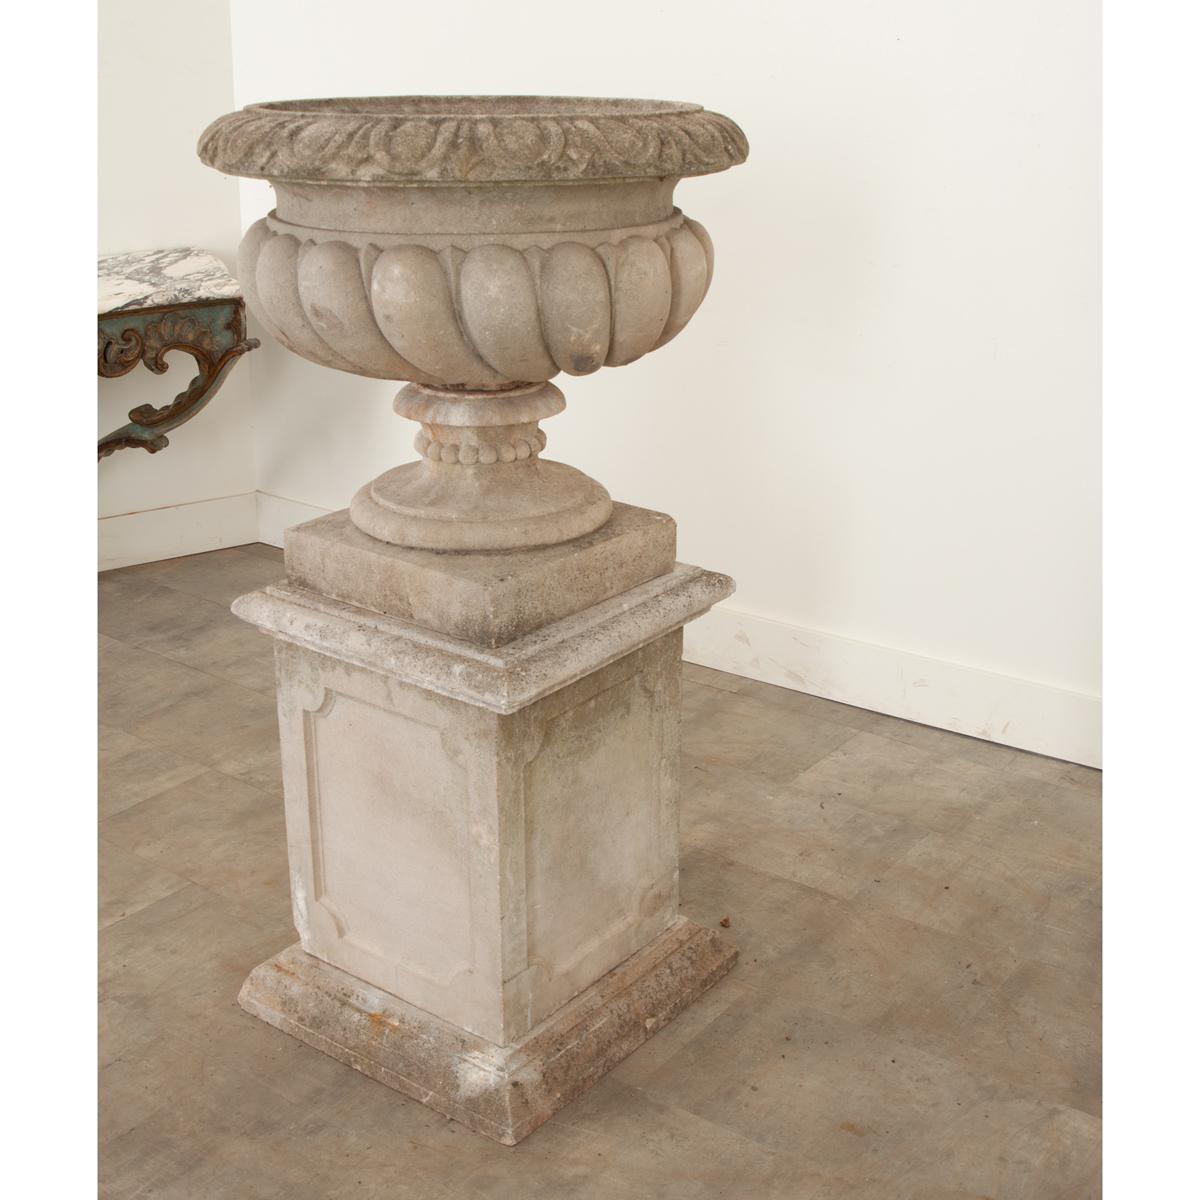 20th Century English Raised Garden Urn on Pedestal